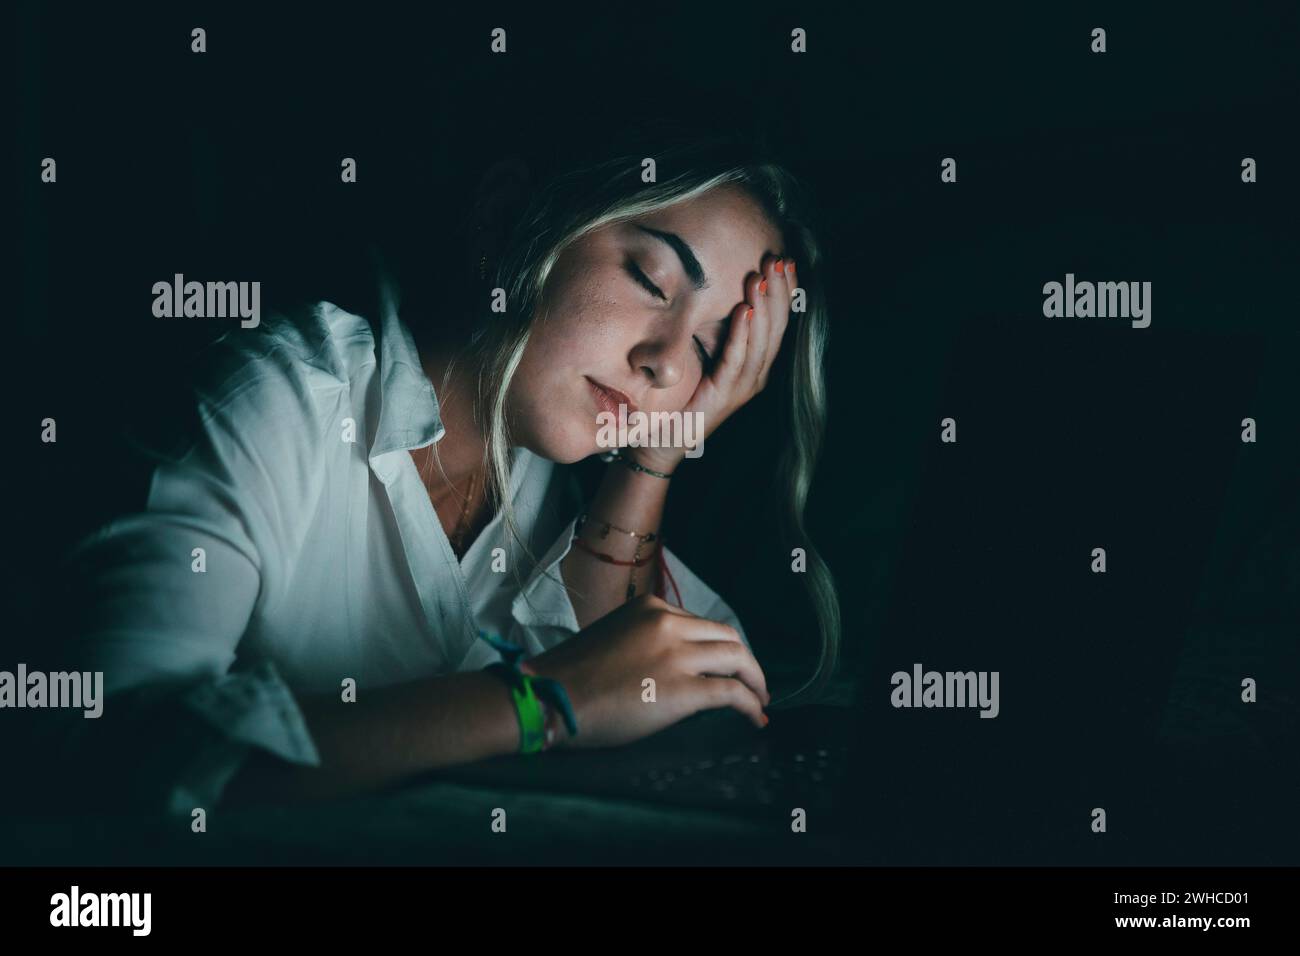 Überwältigter junger kaukasischer Student, der den Kopf berührt, unter verschwommenem Sehvermögen leidet, die Nasenbrücke massiert, die Schmerzen lindert, sich erschöpft fühlt, am späten Abend am Computer im Bett zu arbeiten. Stockfoto